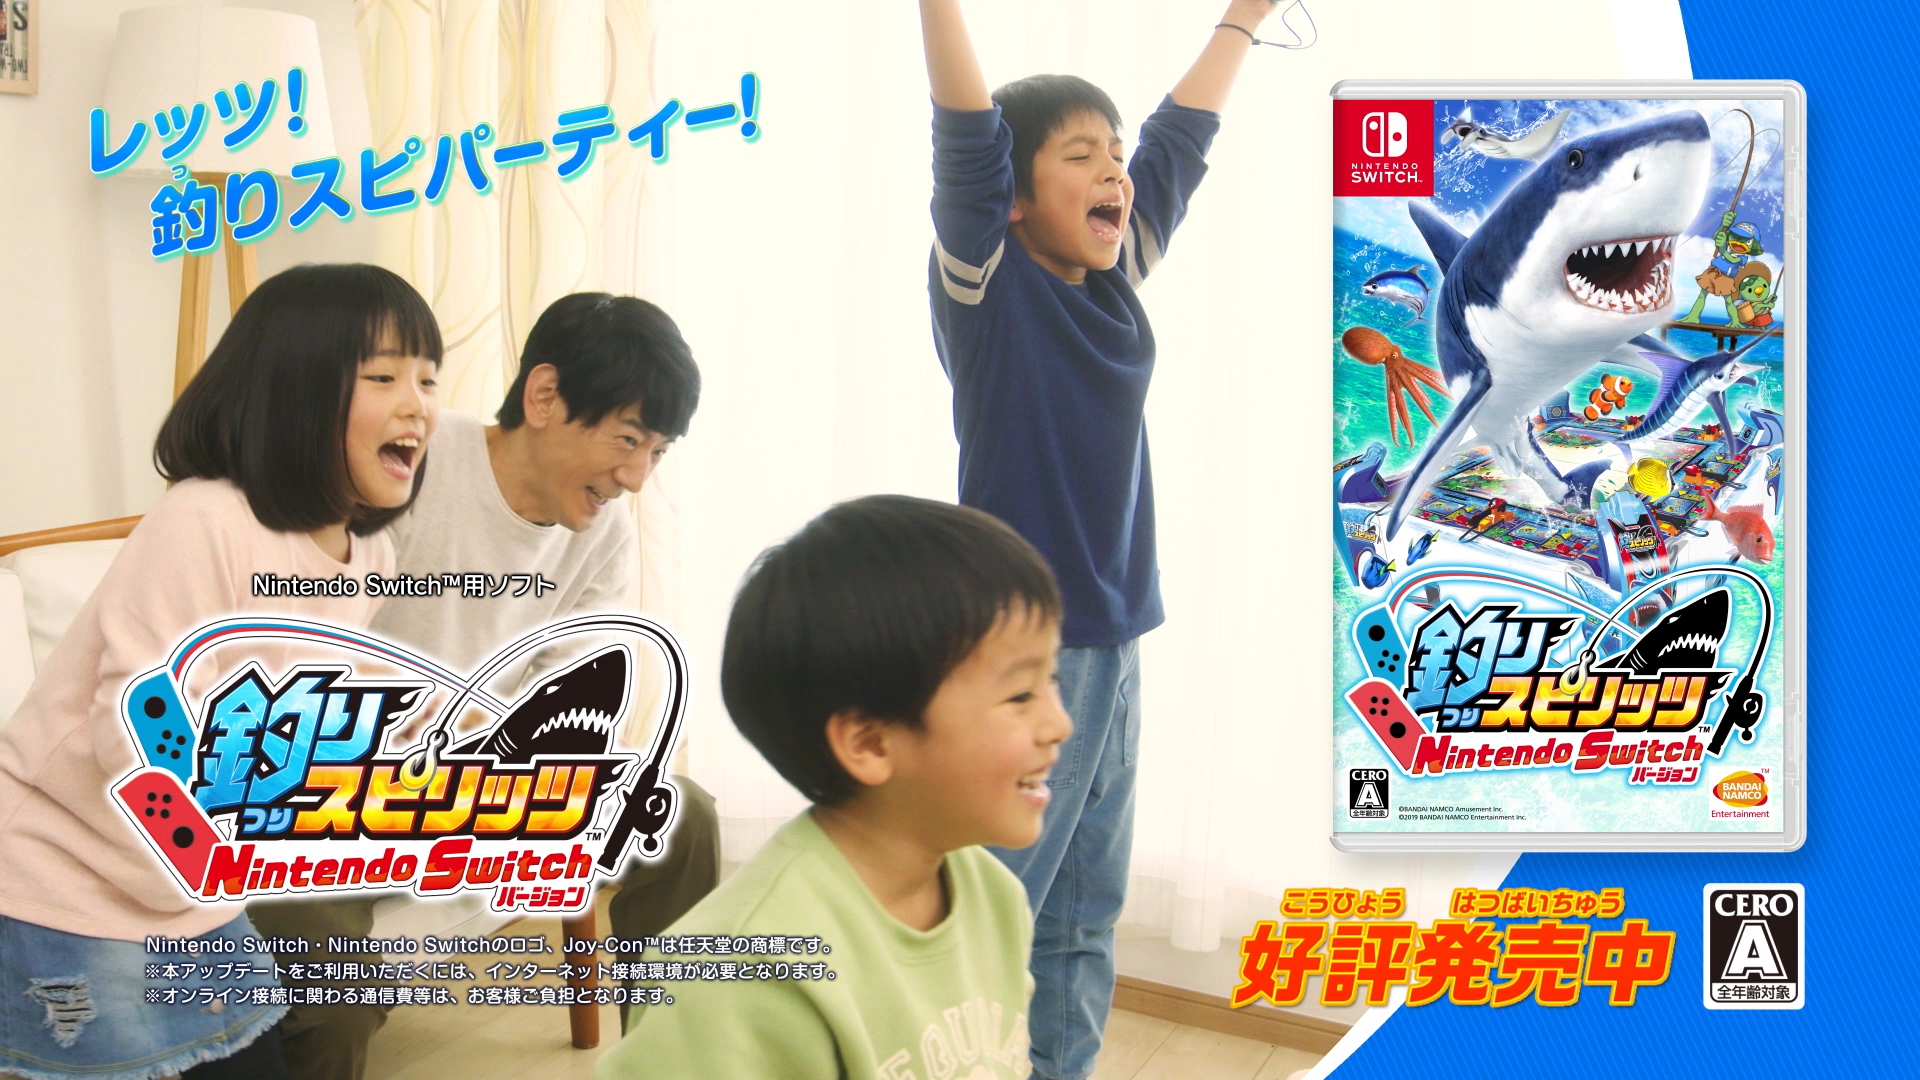 釣りスピリッツ Nintendo Switchバージョン より本格的な釣り 体験が楽しめる サオ型アタッチメント同梱版 本日発売 株式会社バンダイナムコエンターテインメントのプレスリリース